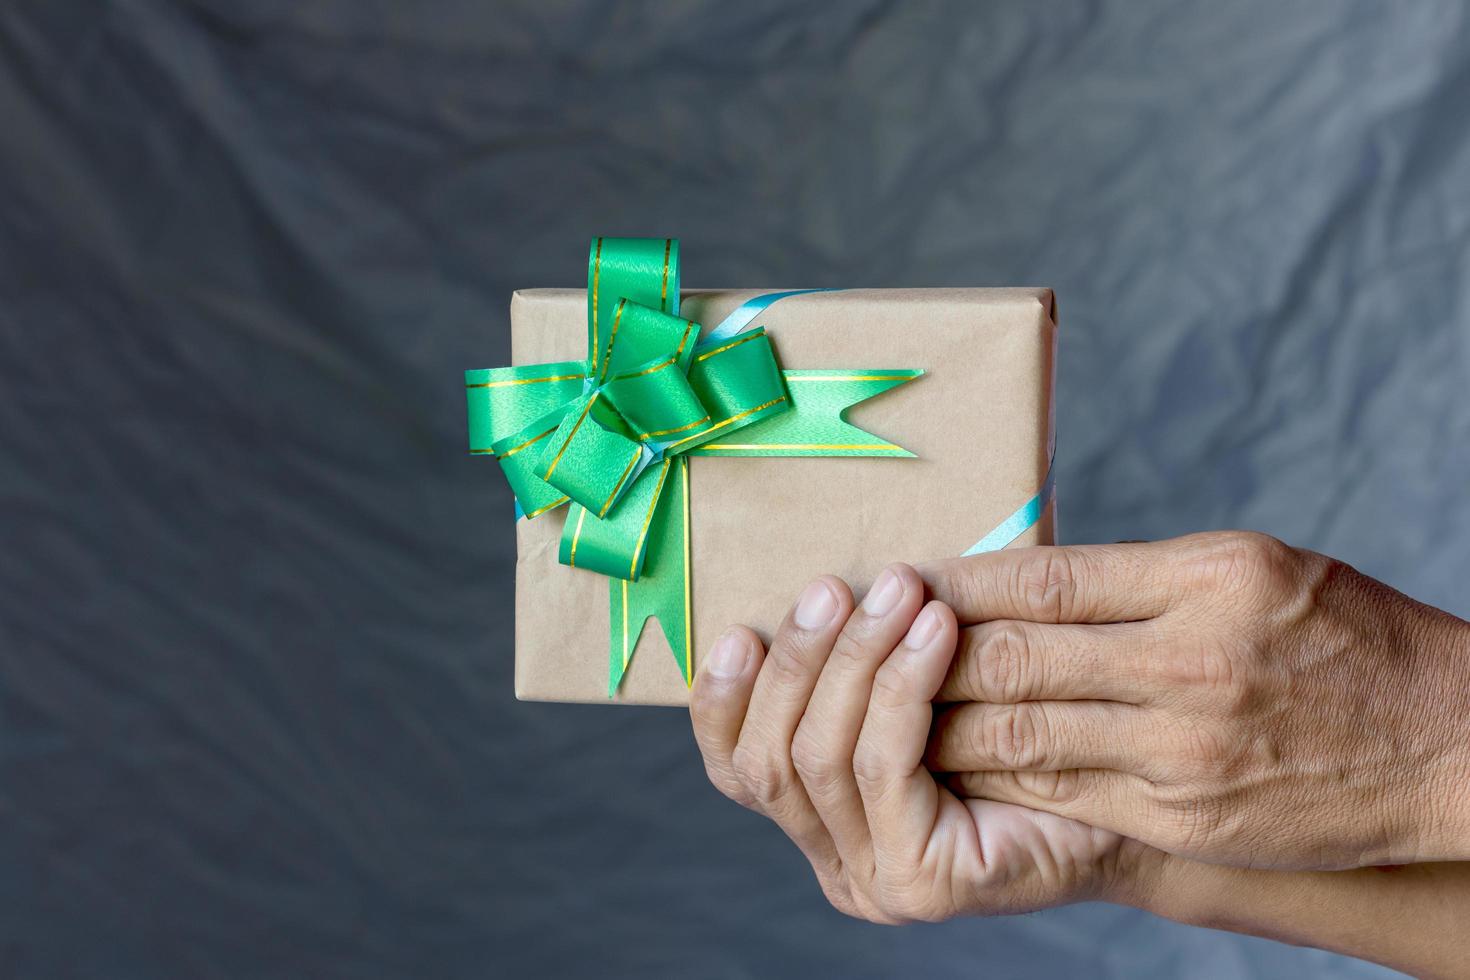 mano sujetando la caja de regalo y el lienzo de pajarita como telón de fondo. foto